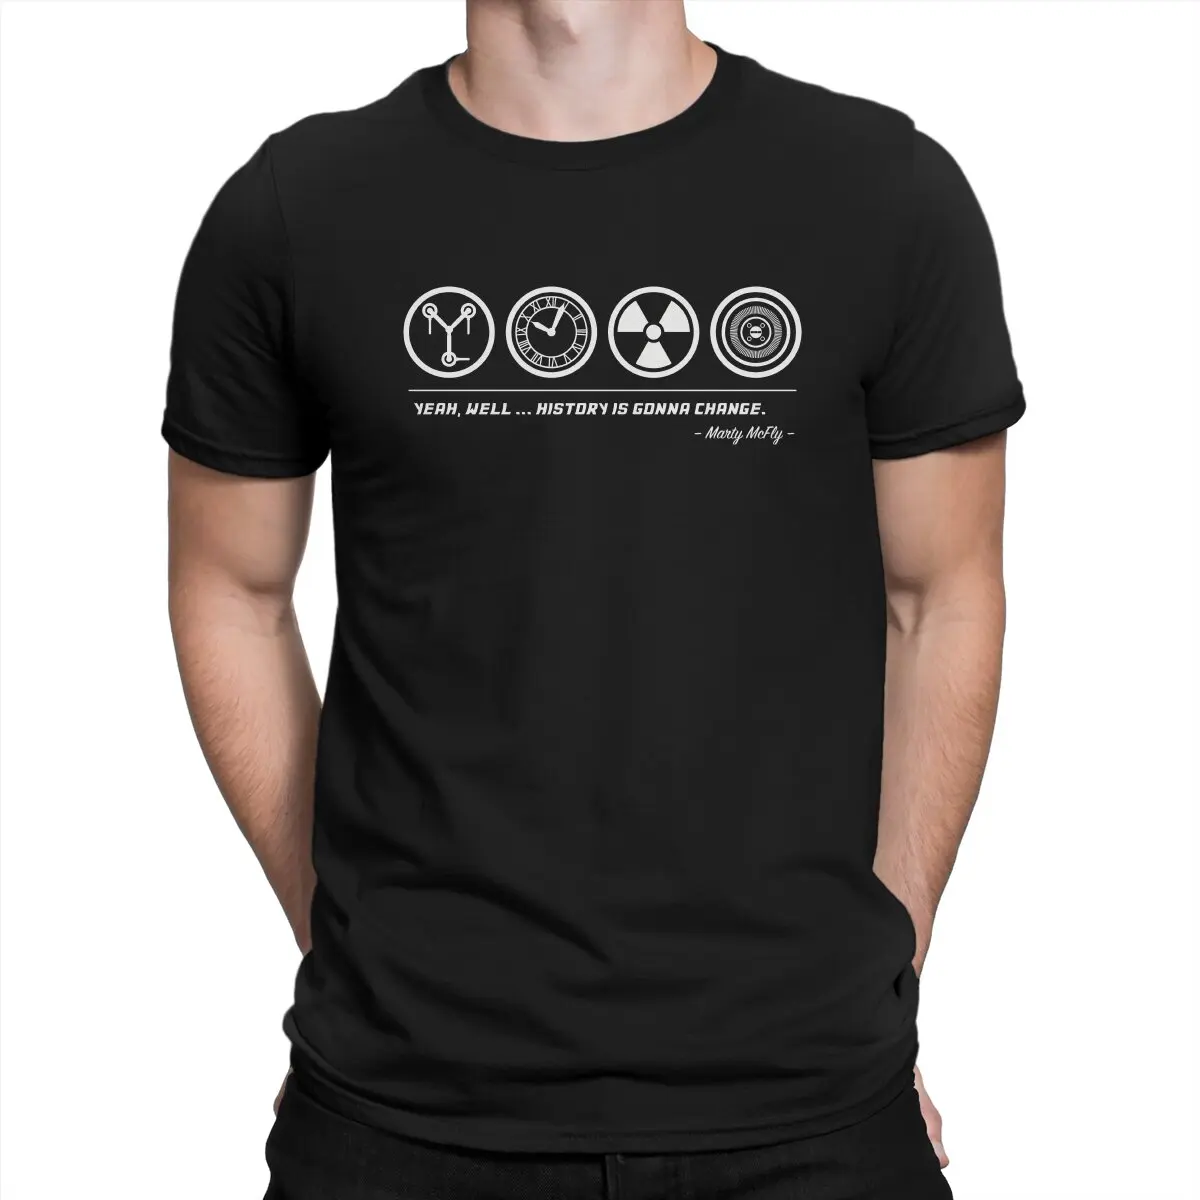 

Мужская футболка с символикой, Классическая забавная футболка из чистого хлопка с коротким рукавом, футболка с символикой фильма «Назад в будущее», классические топы с круглым вырезом